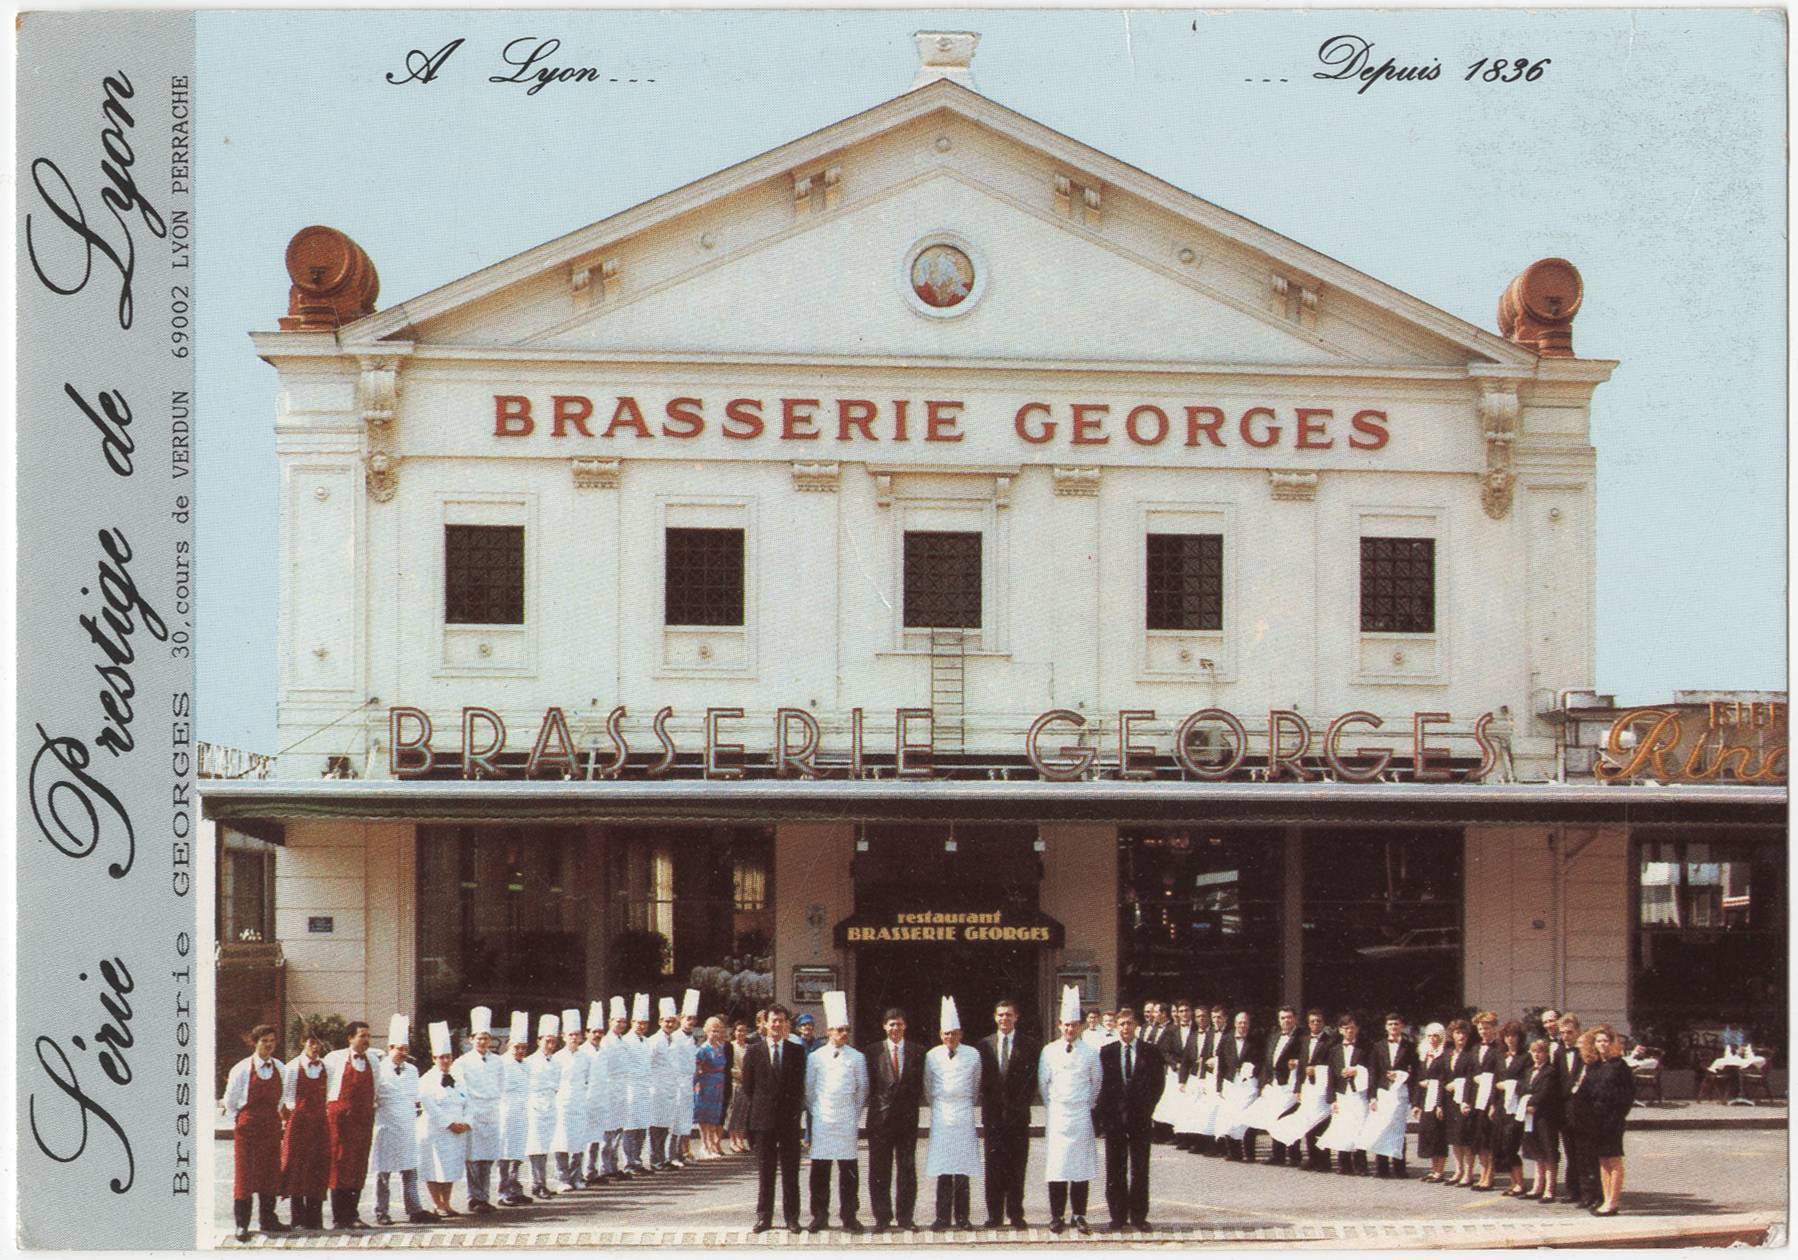 A Lyon - Depuis 1836, brasserie Georges : carte postale couleur (vers 1970, cote : 4FI/12180 usage privé uniquement)